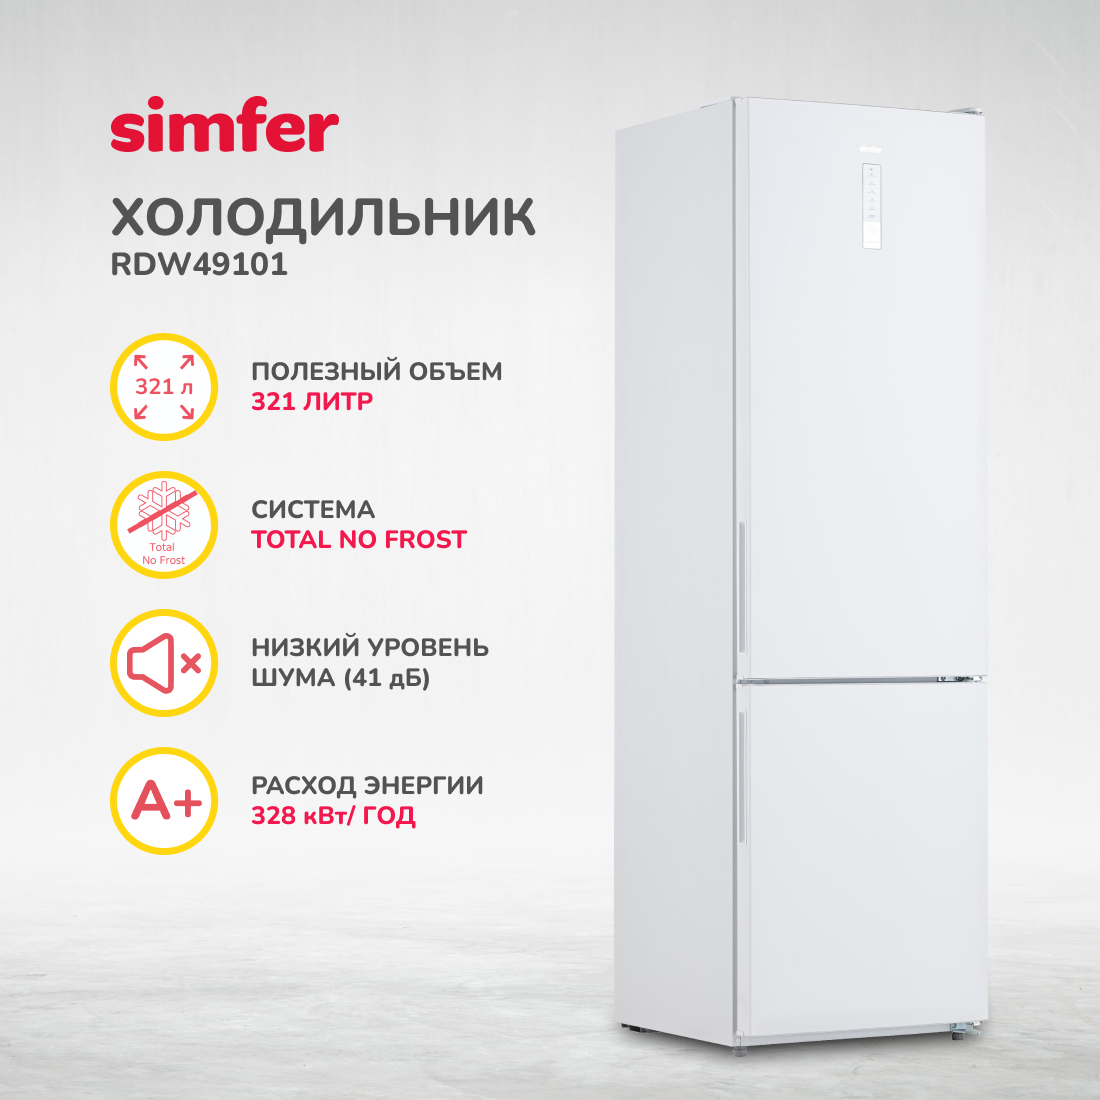 Холодильник Simfer RDW49101, No Frost, двухкамерный, 321 л, цвет белый